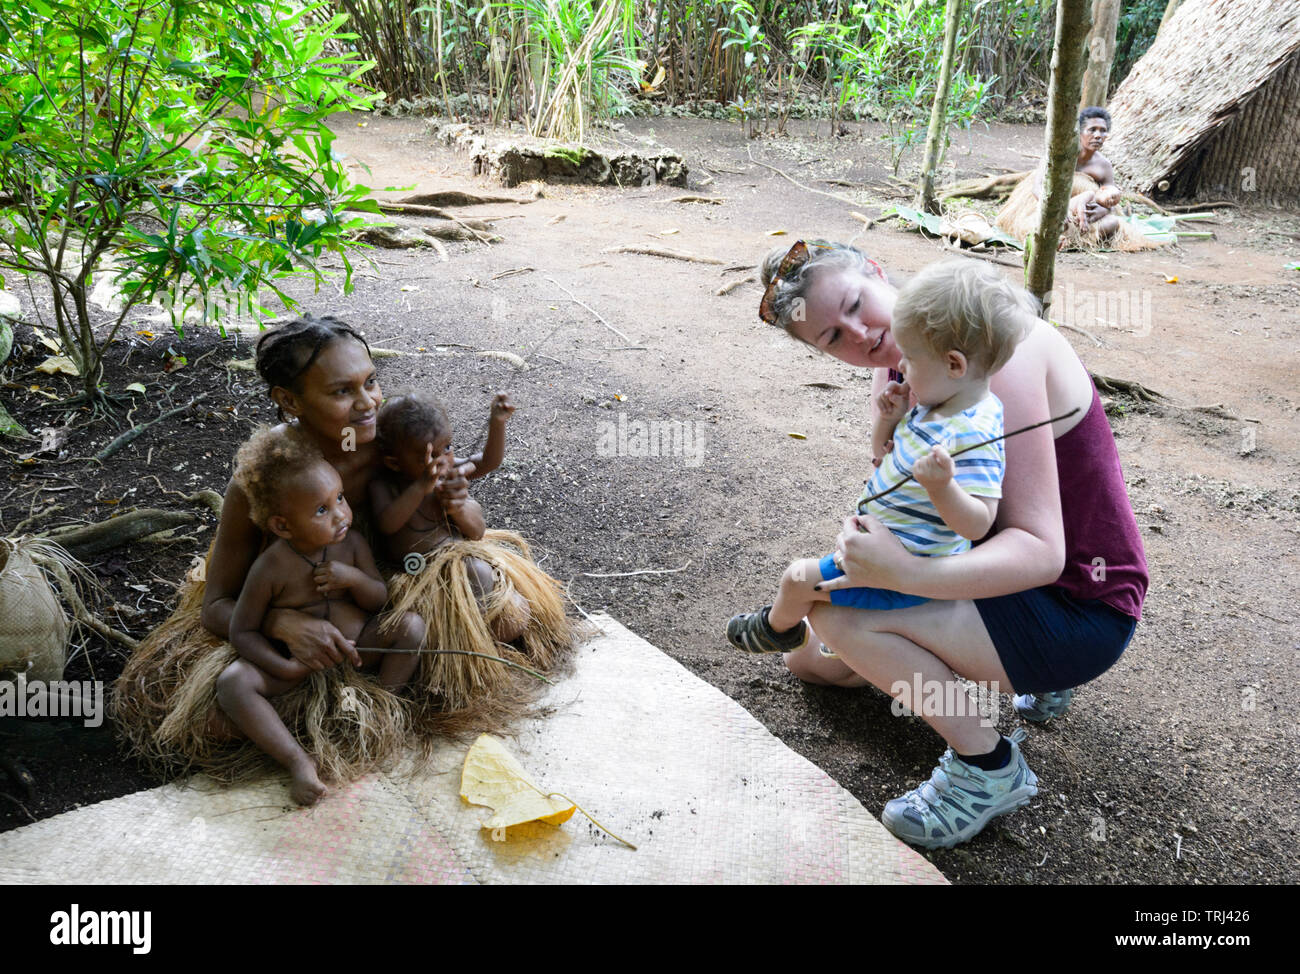 Blond kaukasischen Kleinkind sieht Melanesian tribal junge Kinder, Pepeyo Cultural Village, Port Vila, Efate Island, Vanuatu, Melanesien Stockfoto